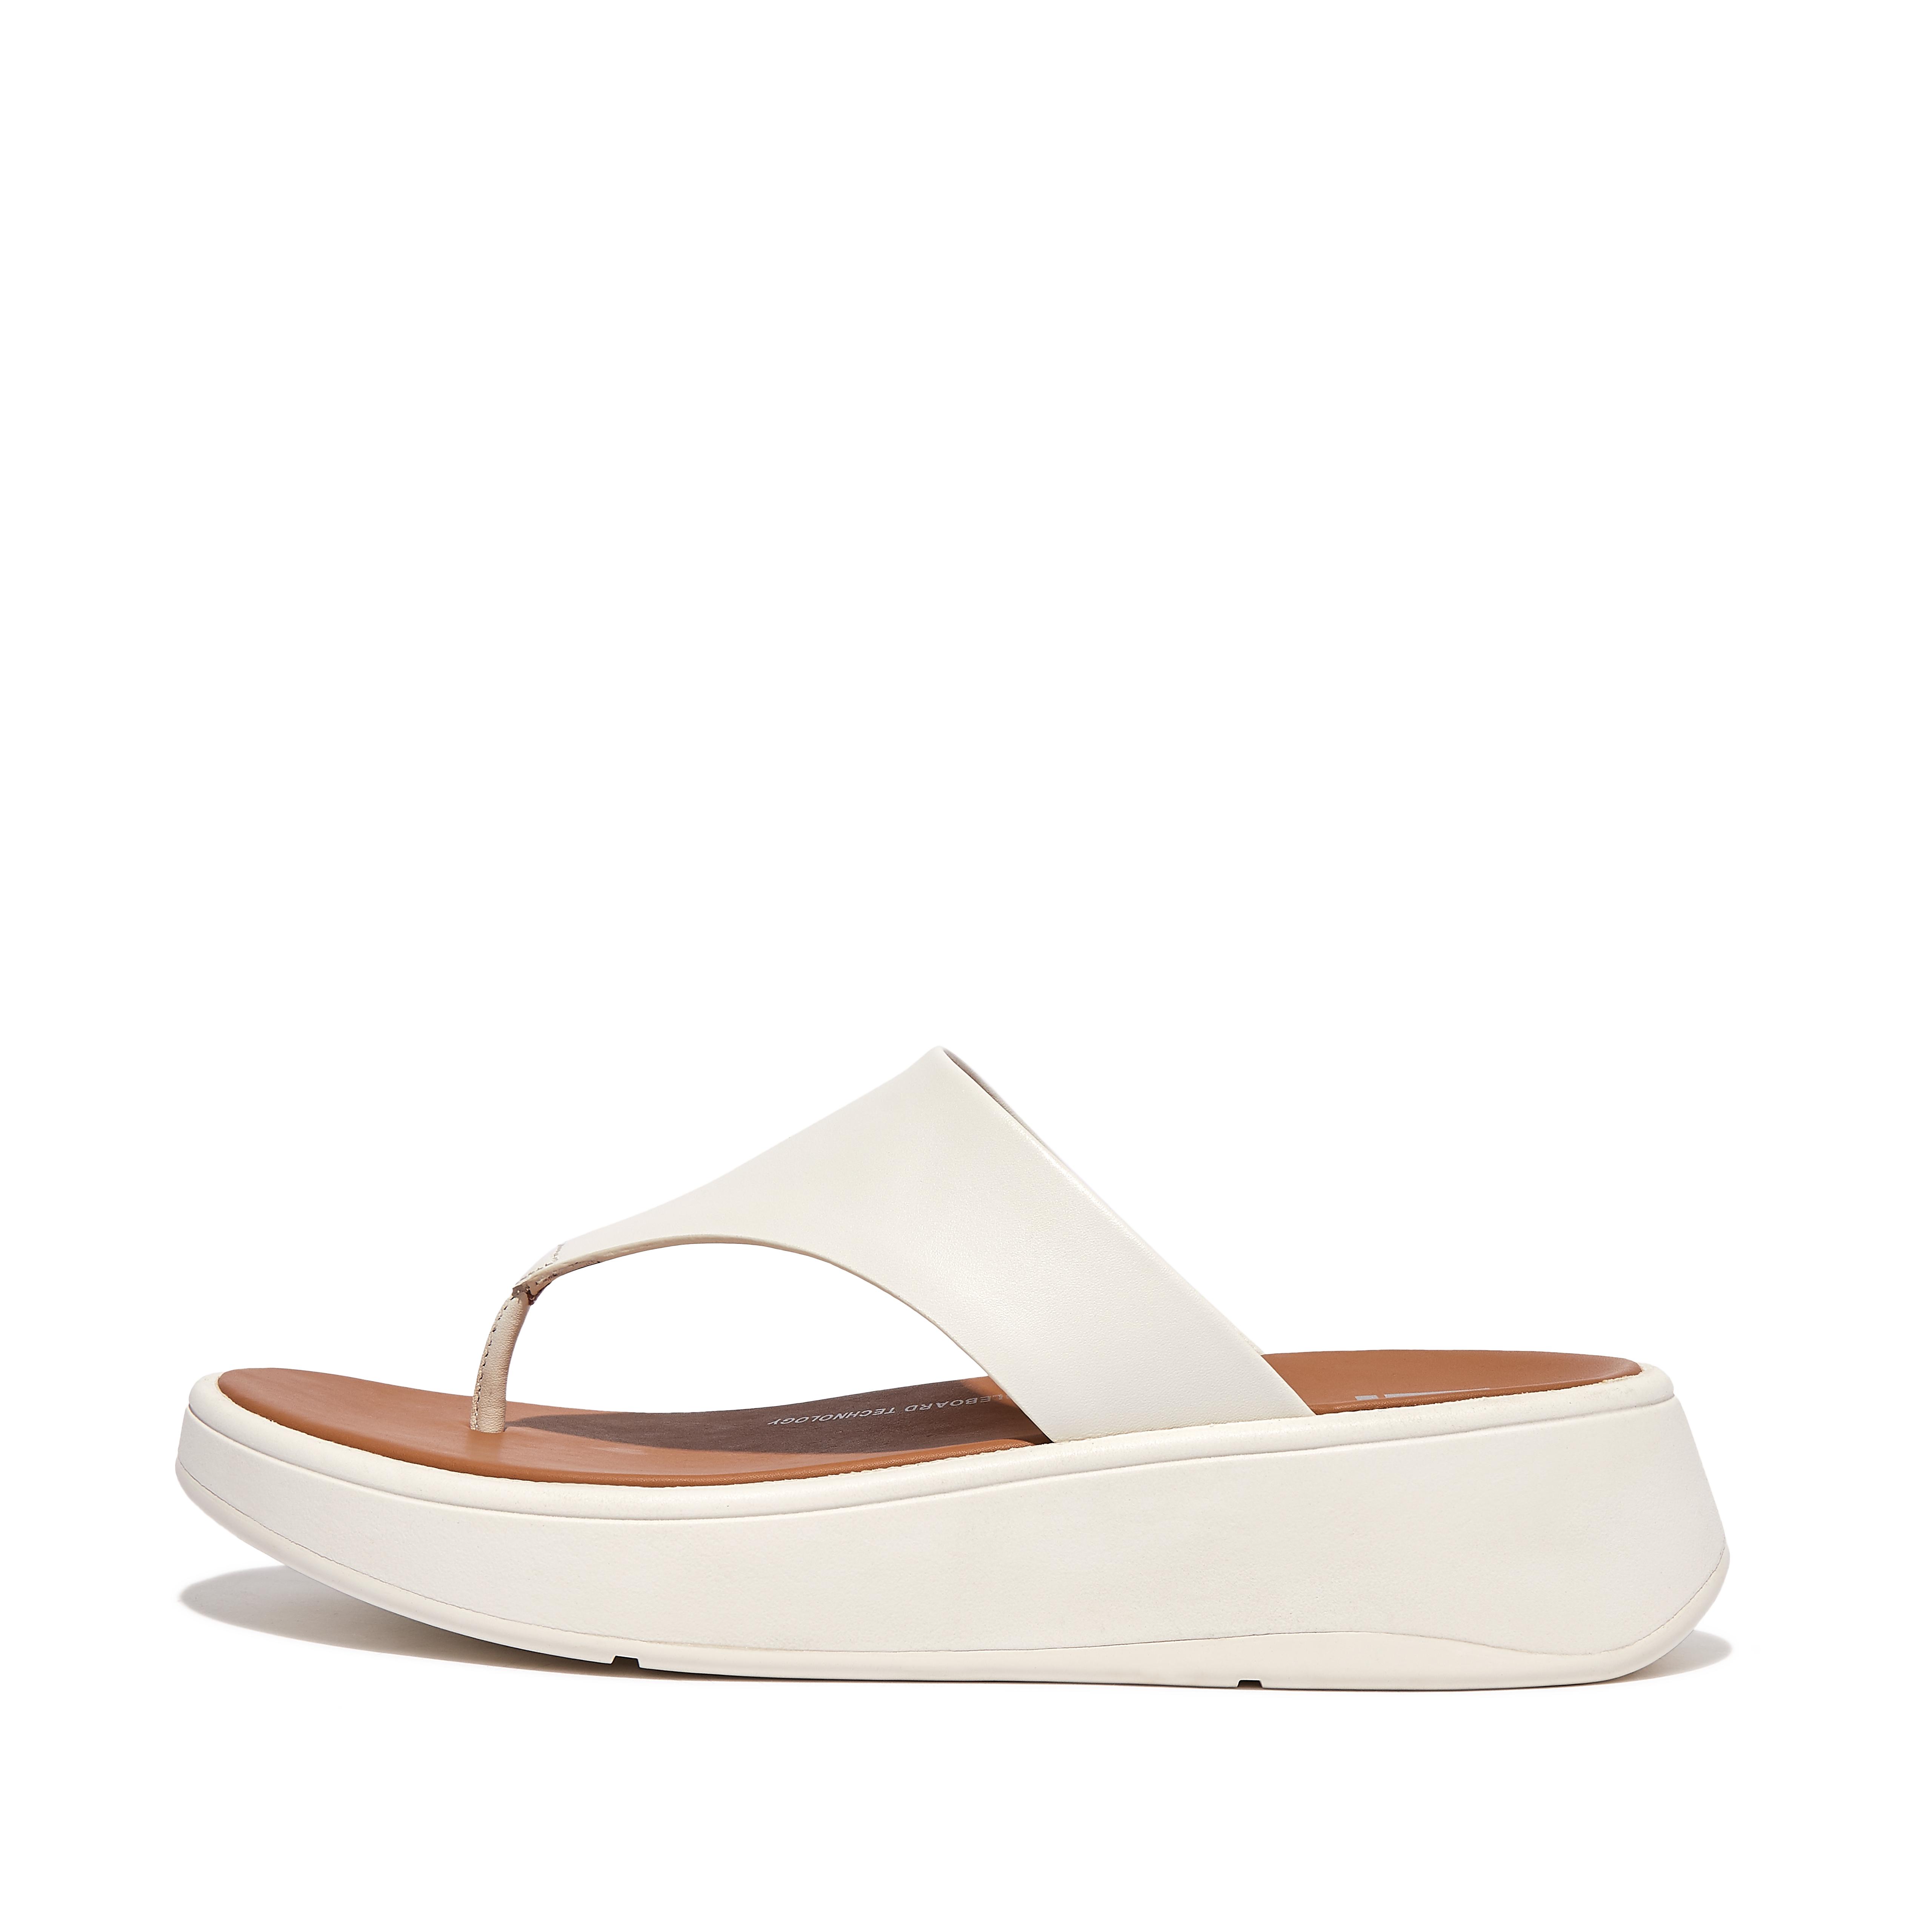 핏플랍 샌들 Fitflop Leather Flatform Toe-Post Sandals,Cream